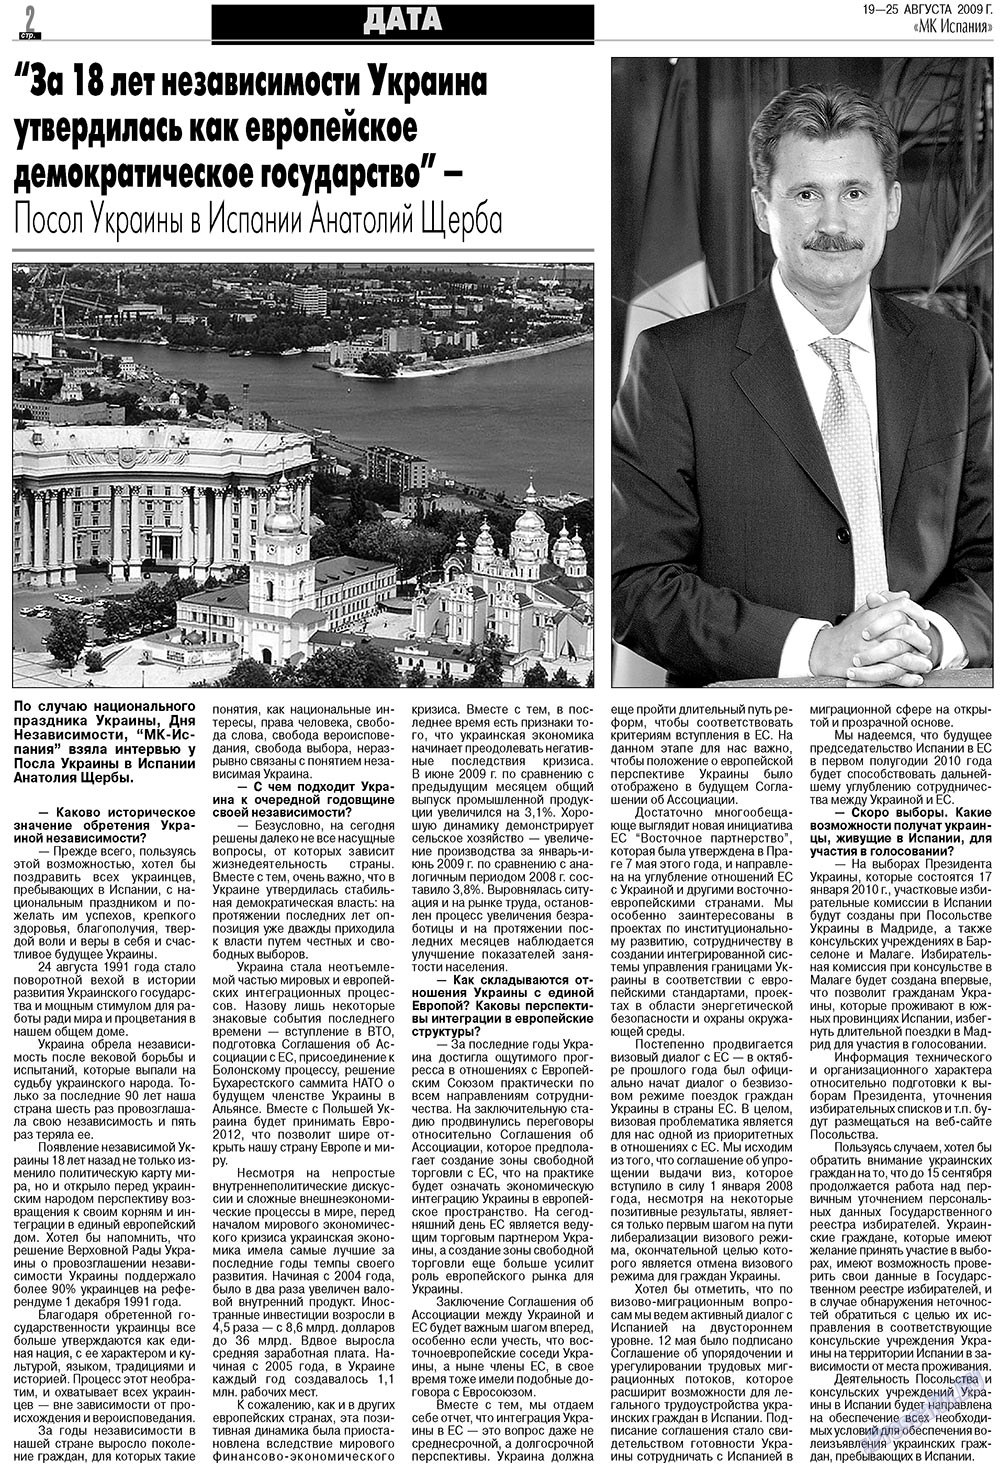 МК Испания, газета. 2009 №34 стр.2